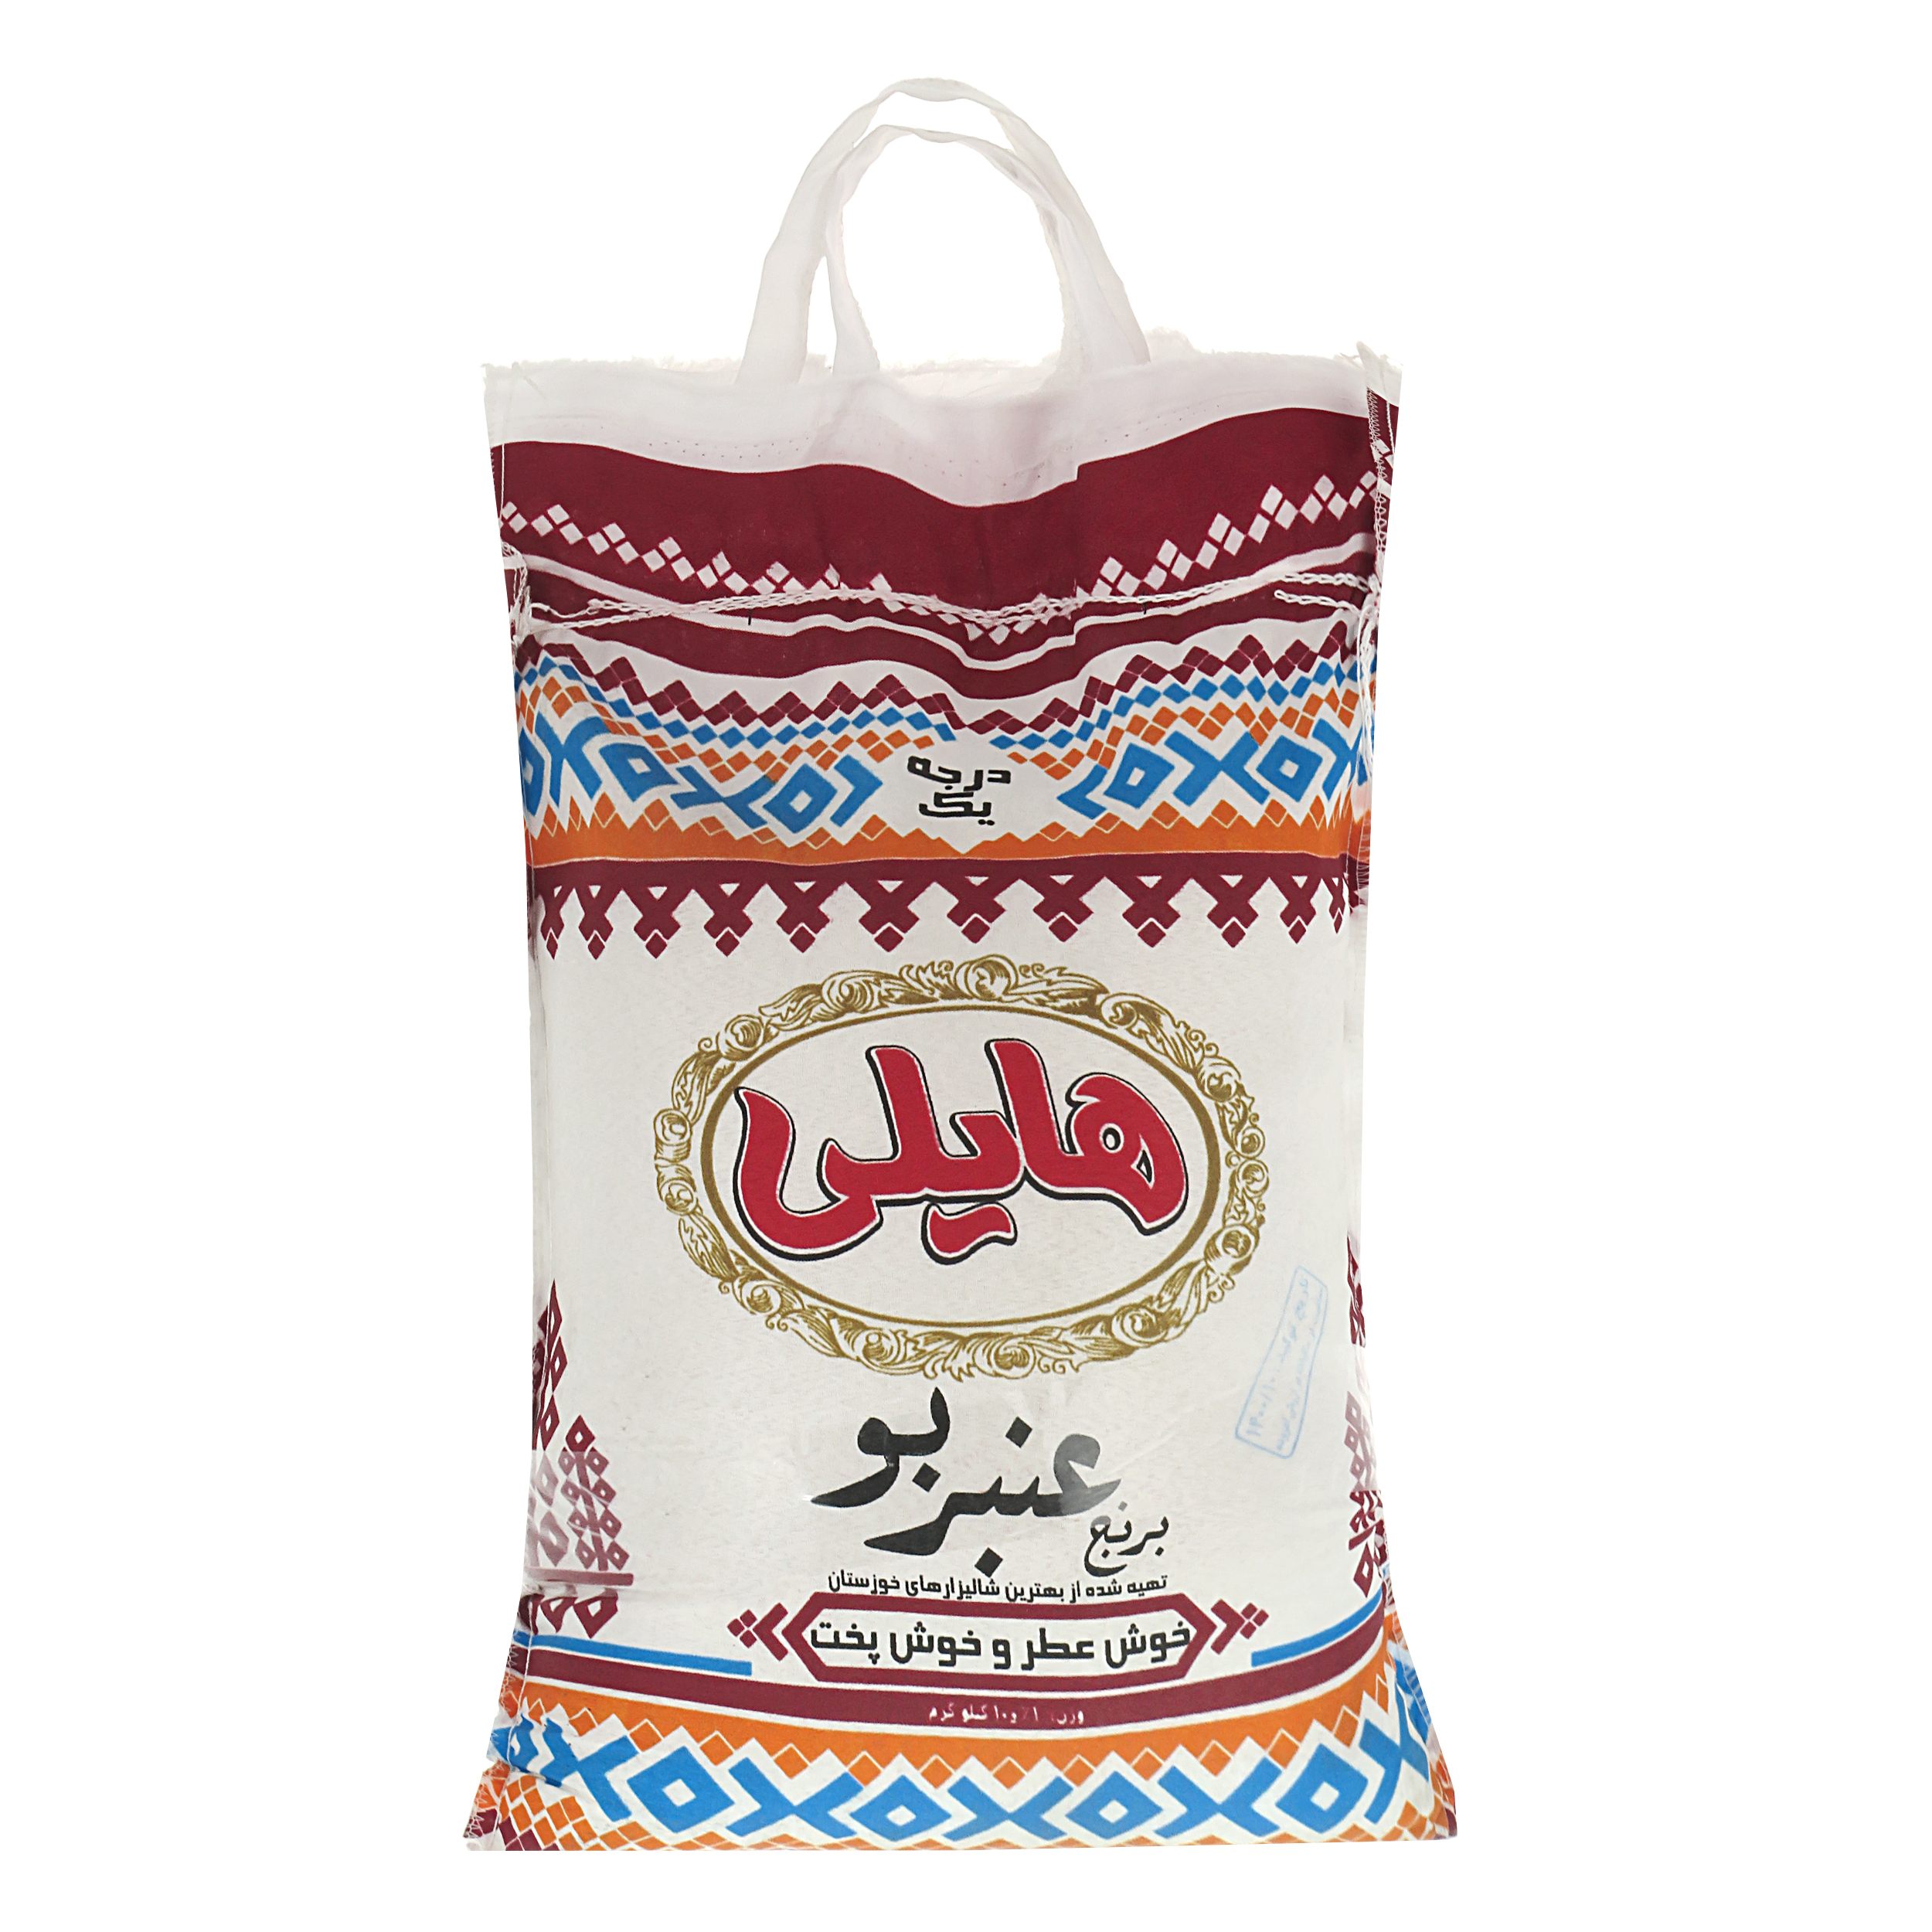 نکته خرید - قیمت روز برنج ایرانی عنبربو هایلی - 10کیلو گرم خرید